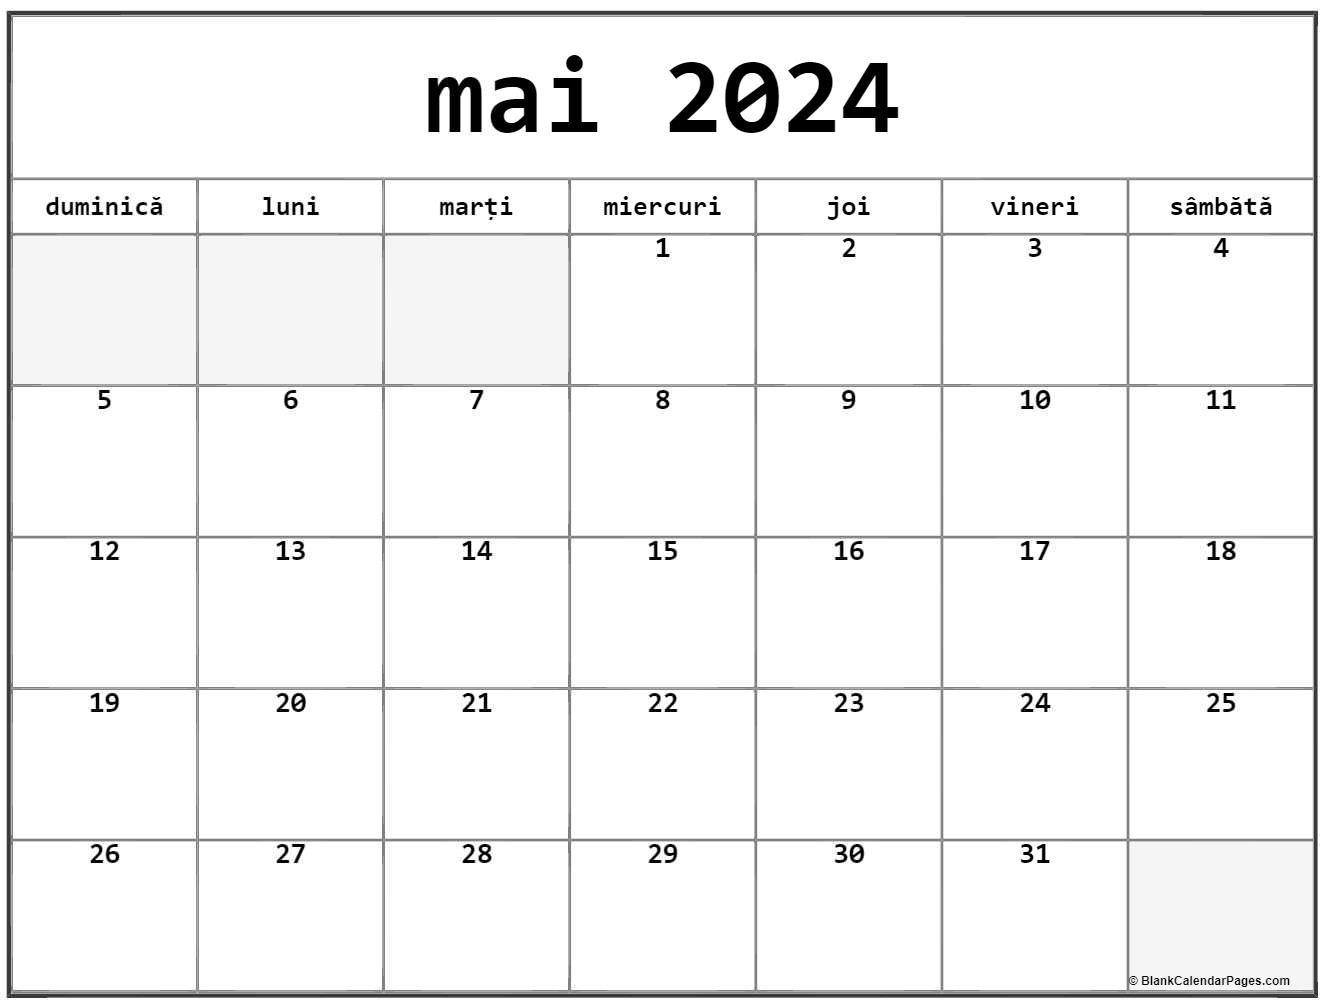 Calendarul mai 2024 imprimabil gratuit in romana